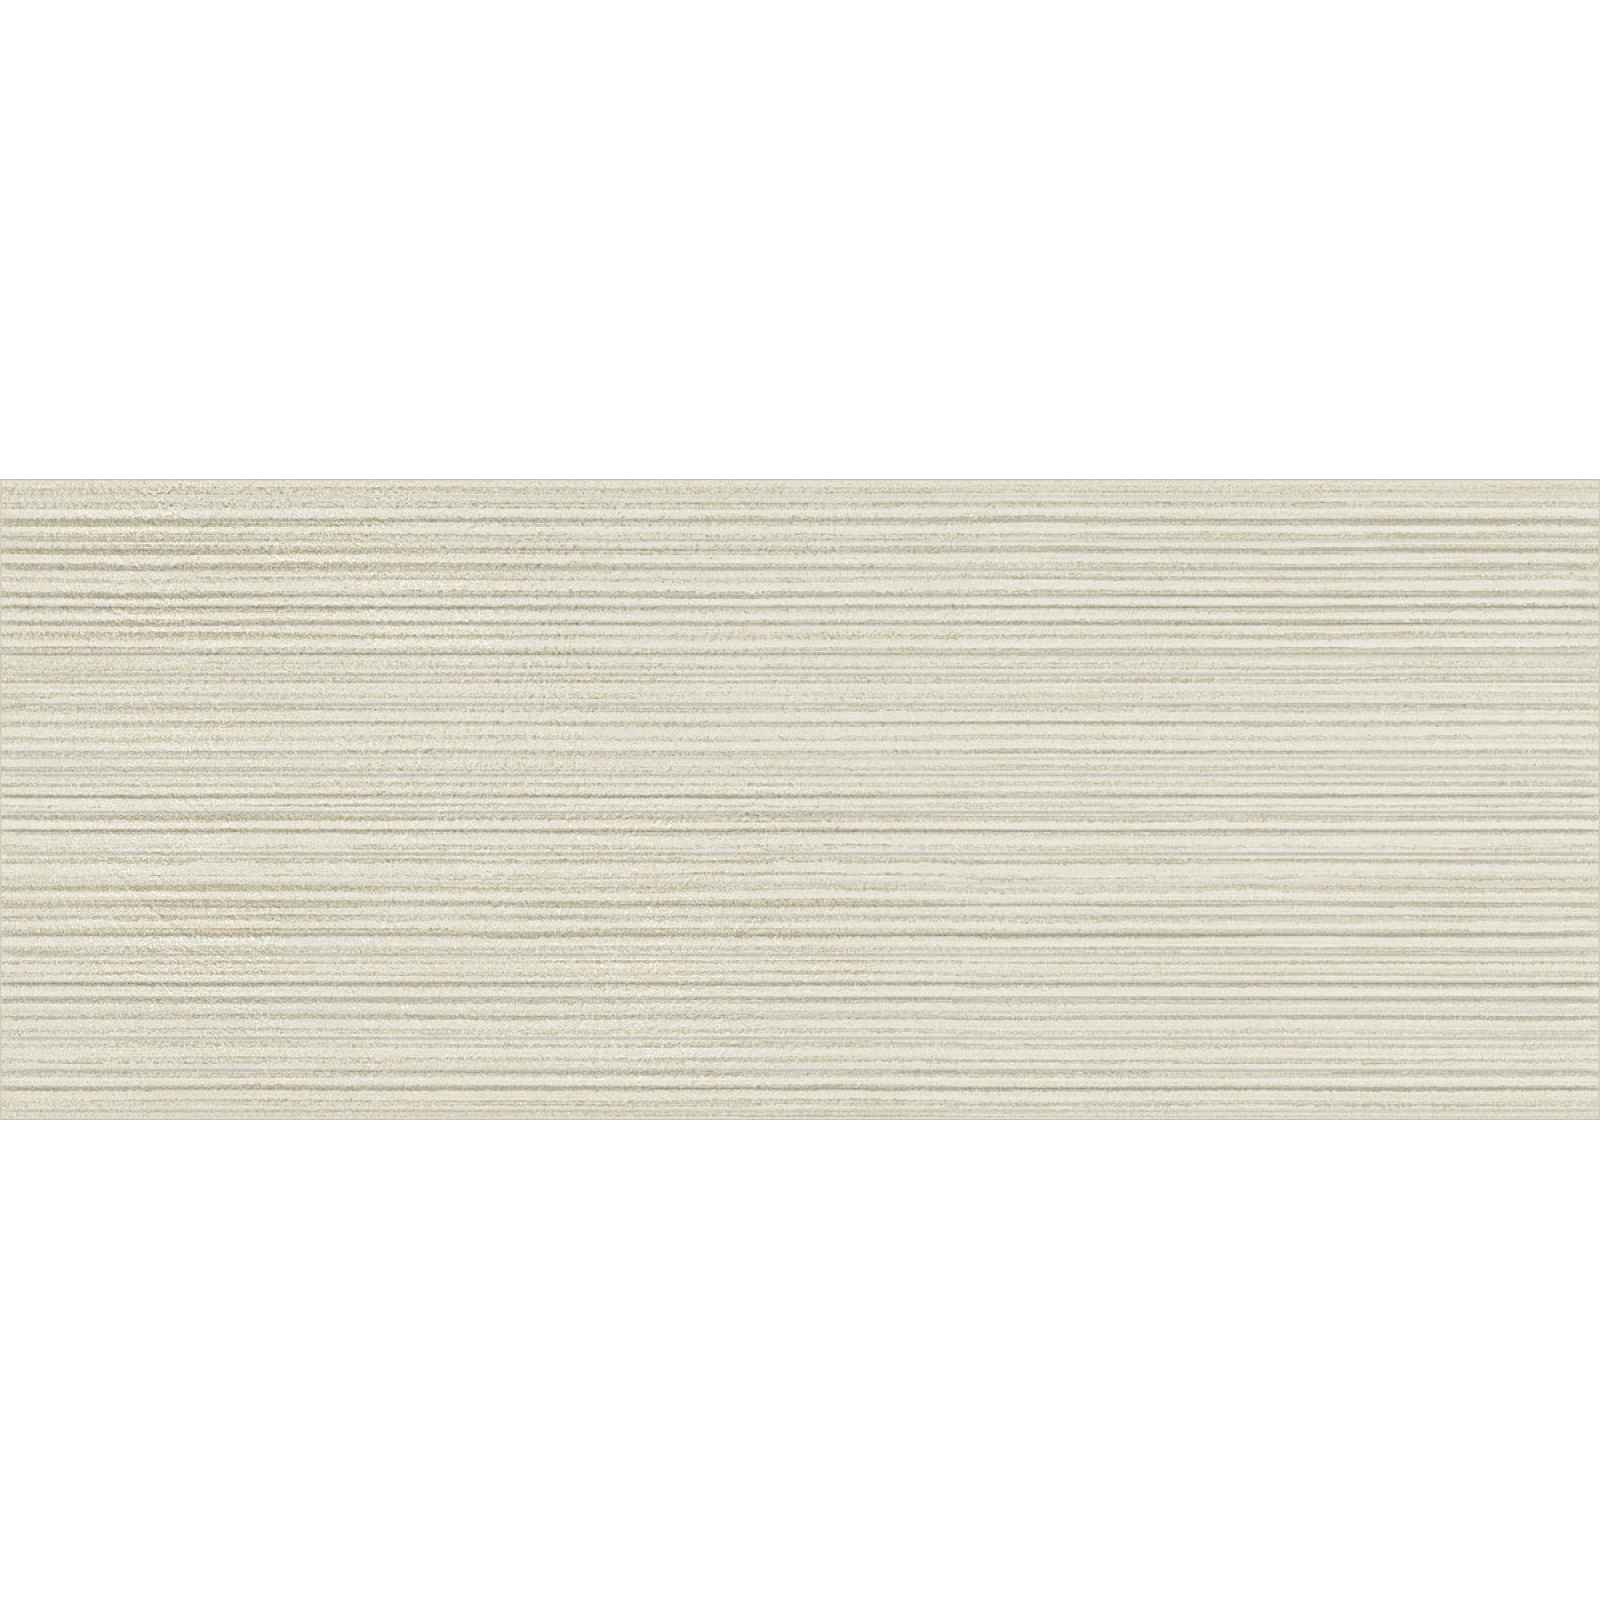 Obklad Del Conca Espressione beige bambu 20x50 cm mat 54ES01BA